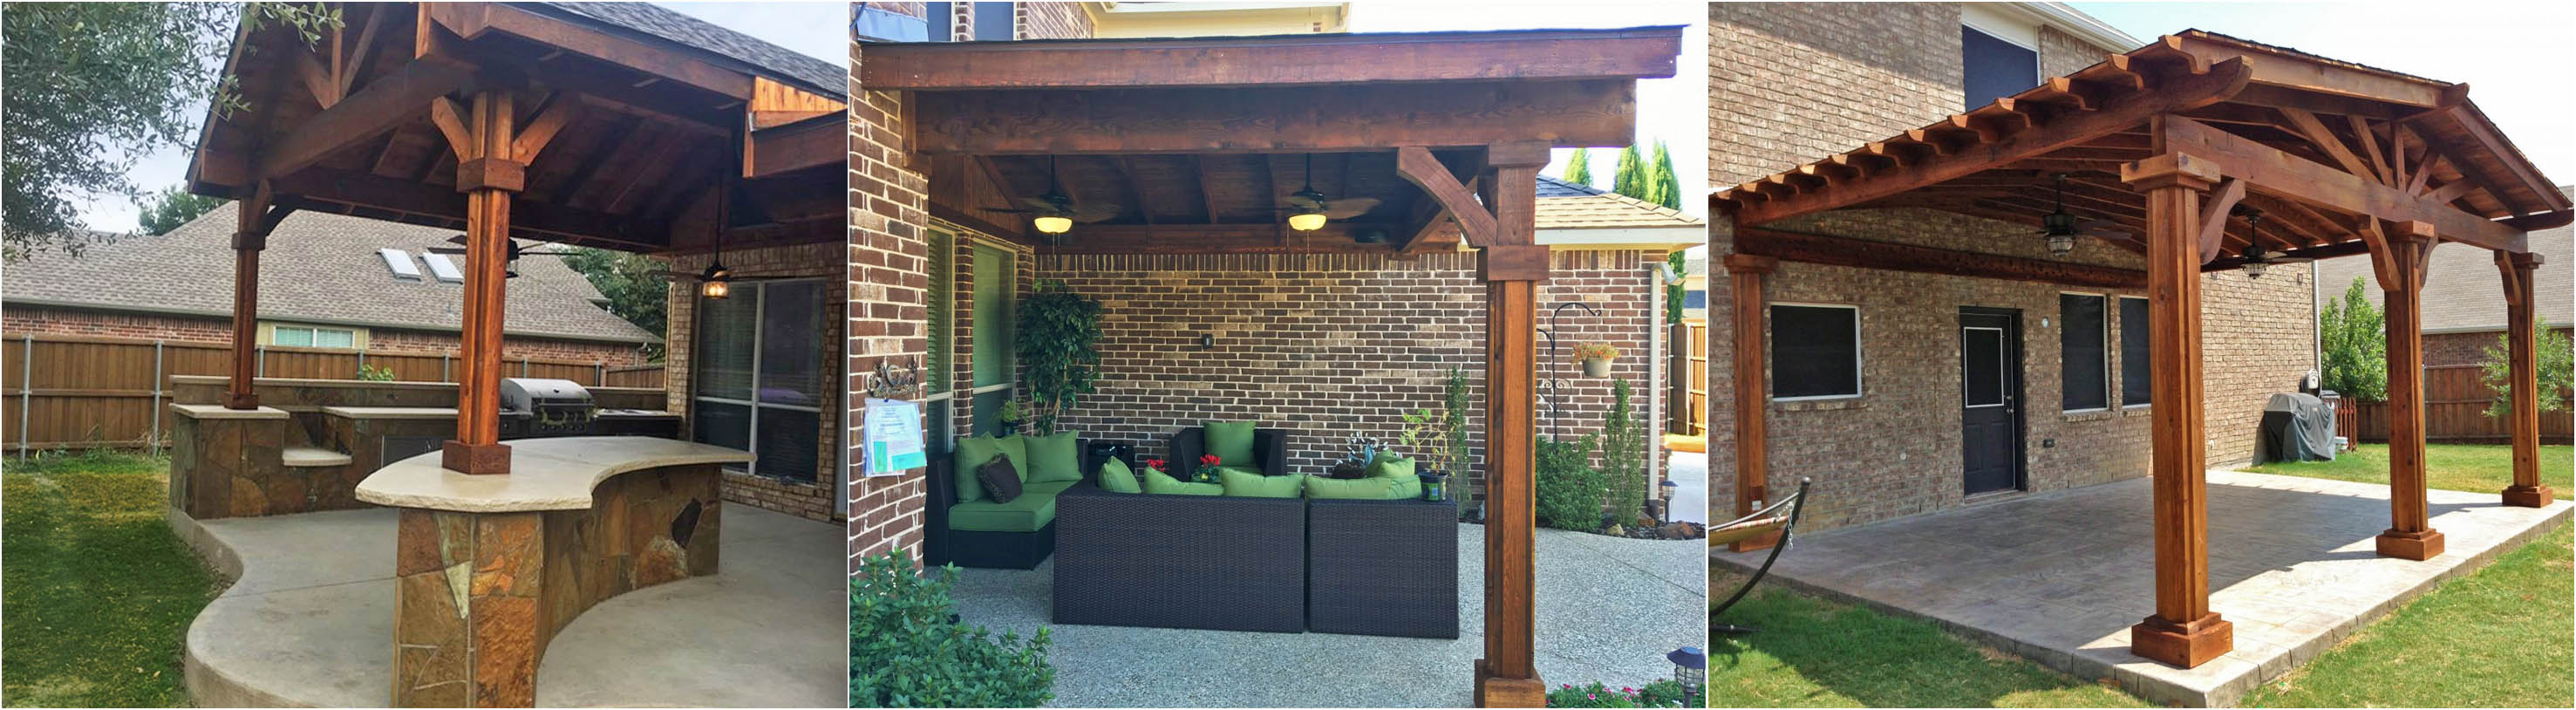 Frisco Patio Cover Companies Beautiful Backyard Living regarding size 2954 X 814